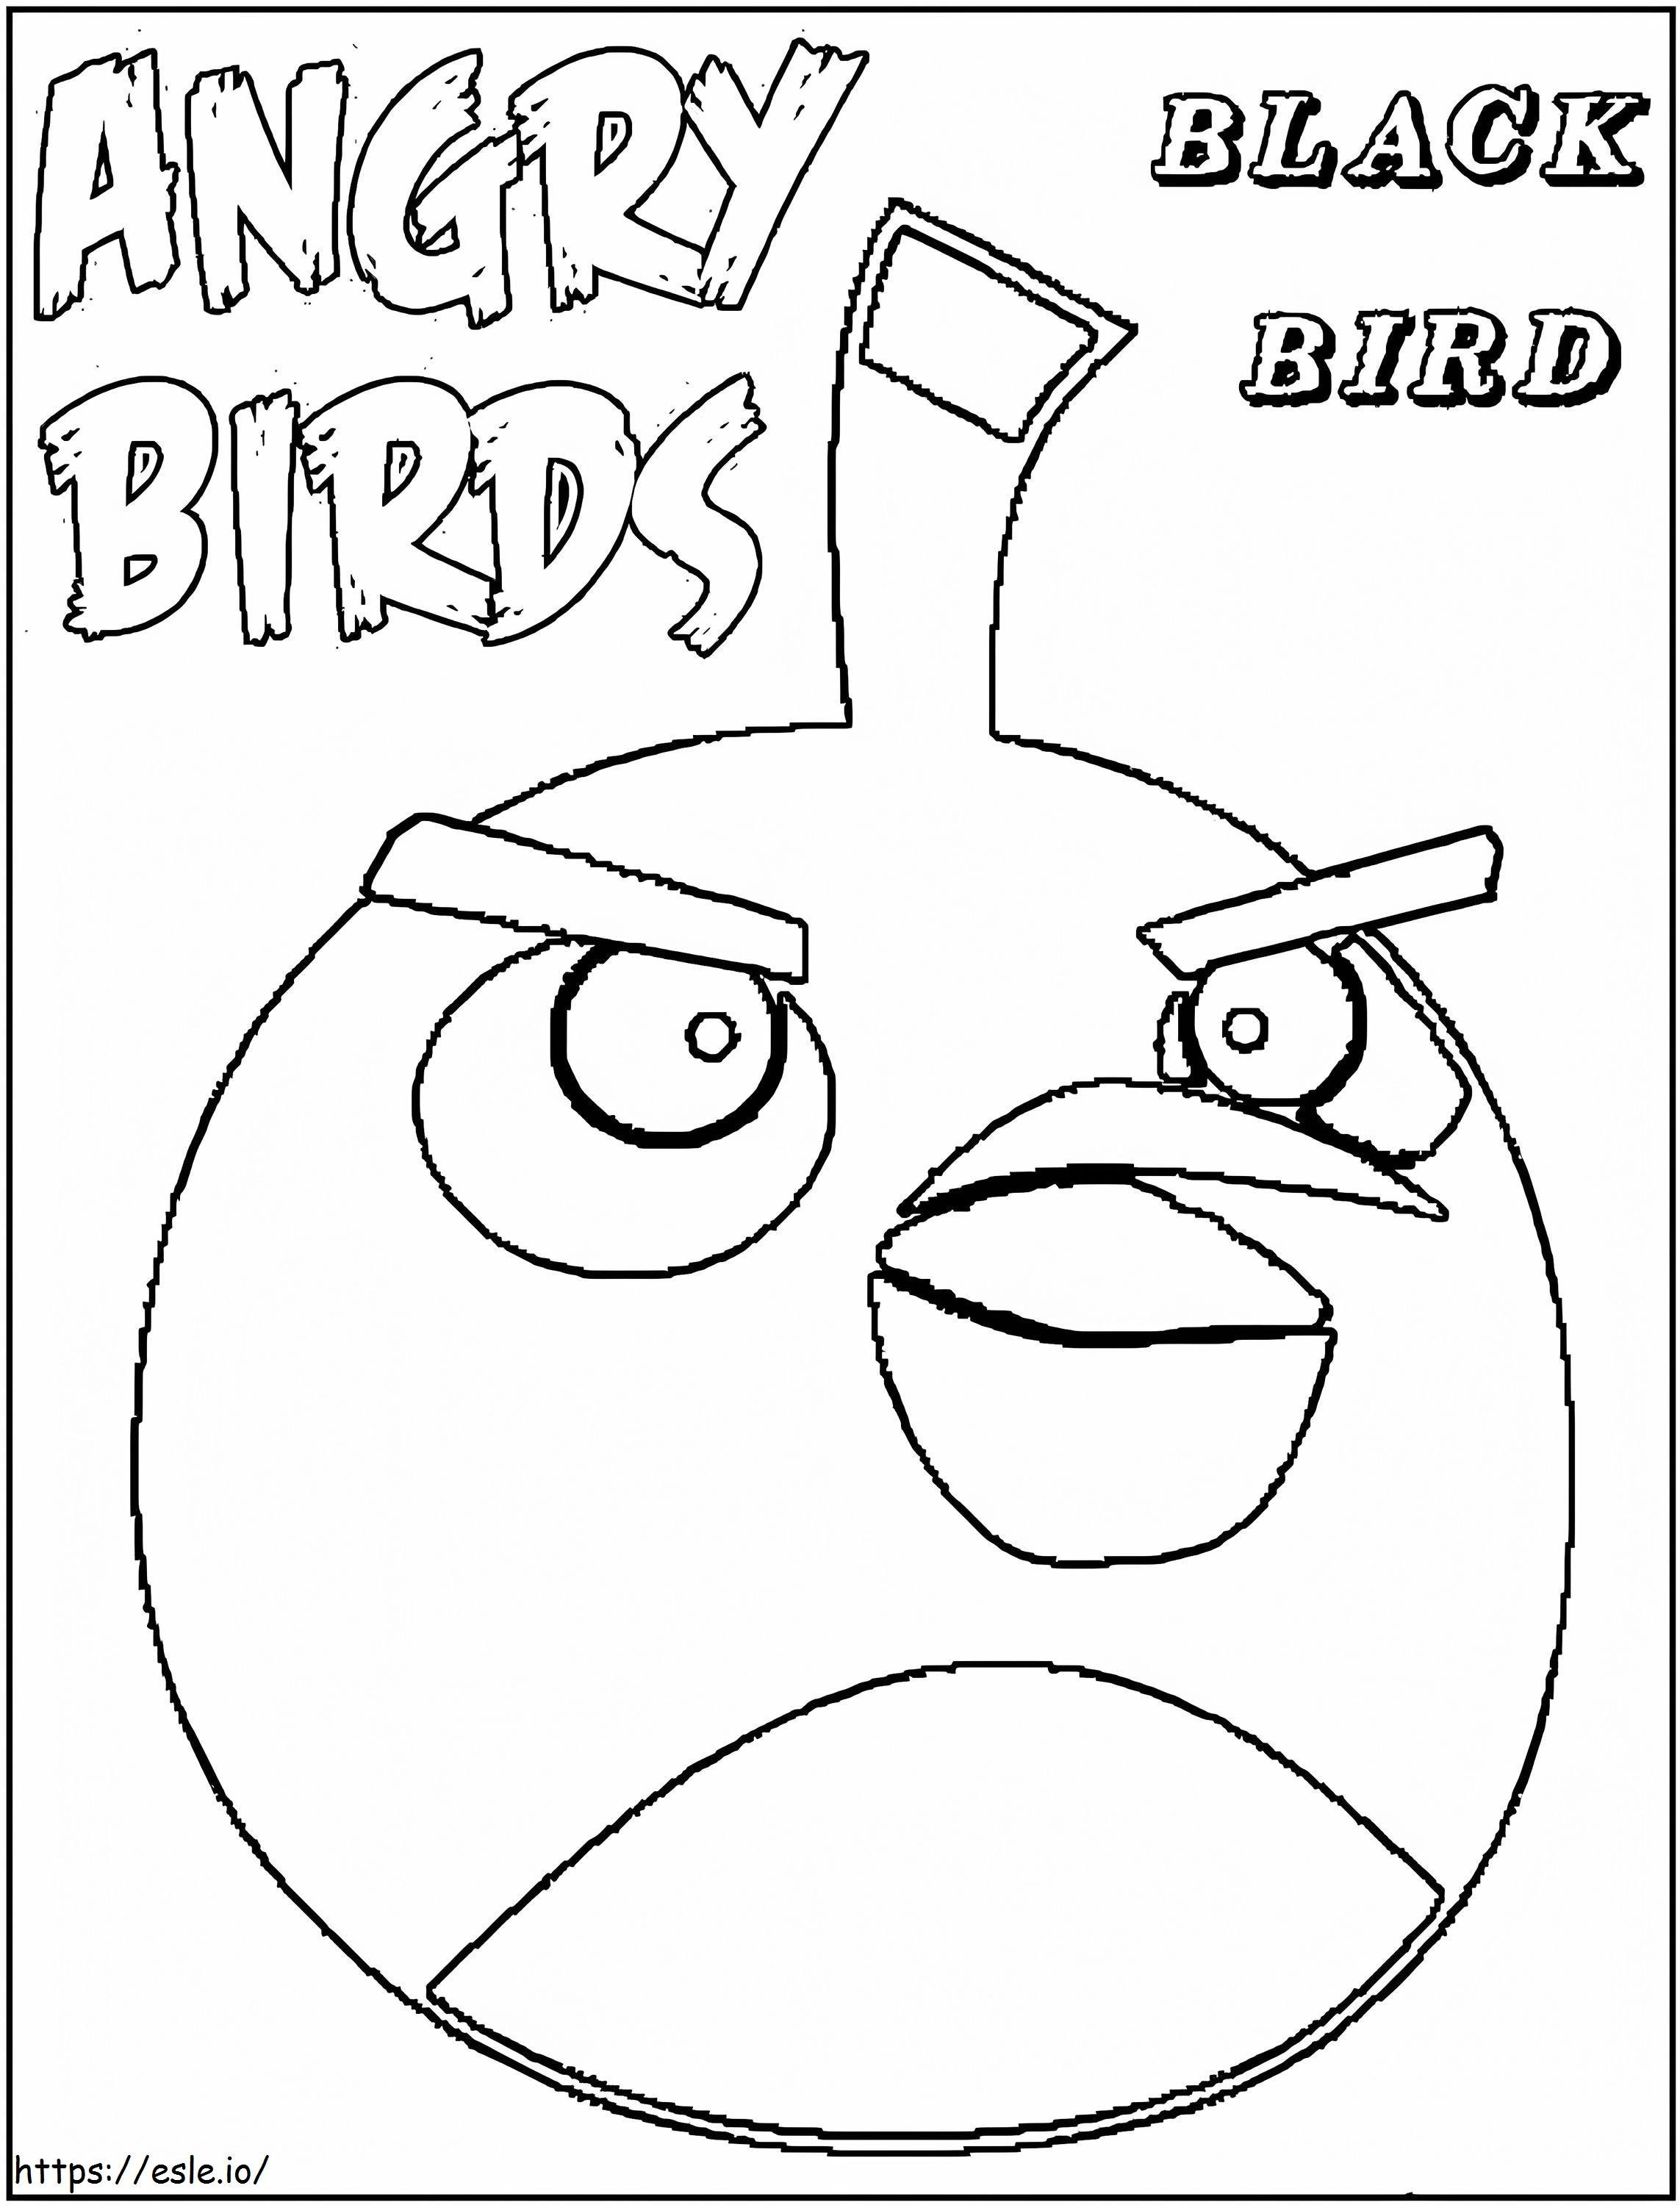 Schwarze Vogelzeichnung von Angry Birds ausmalbilder